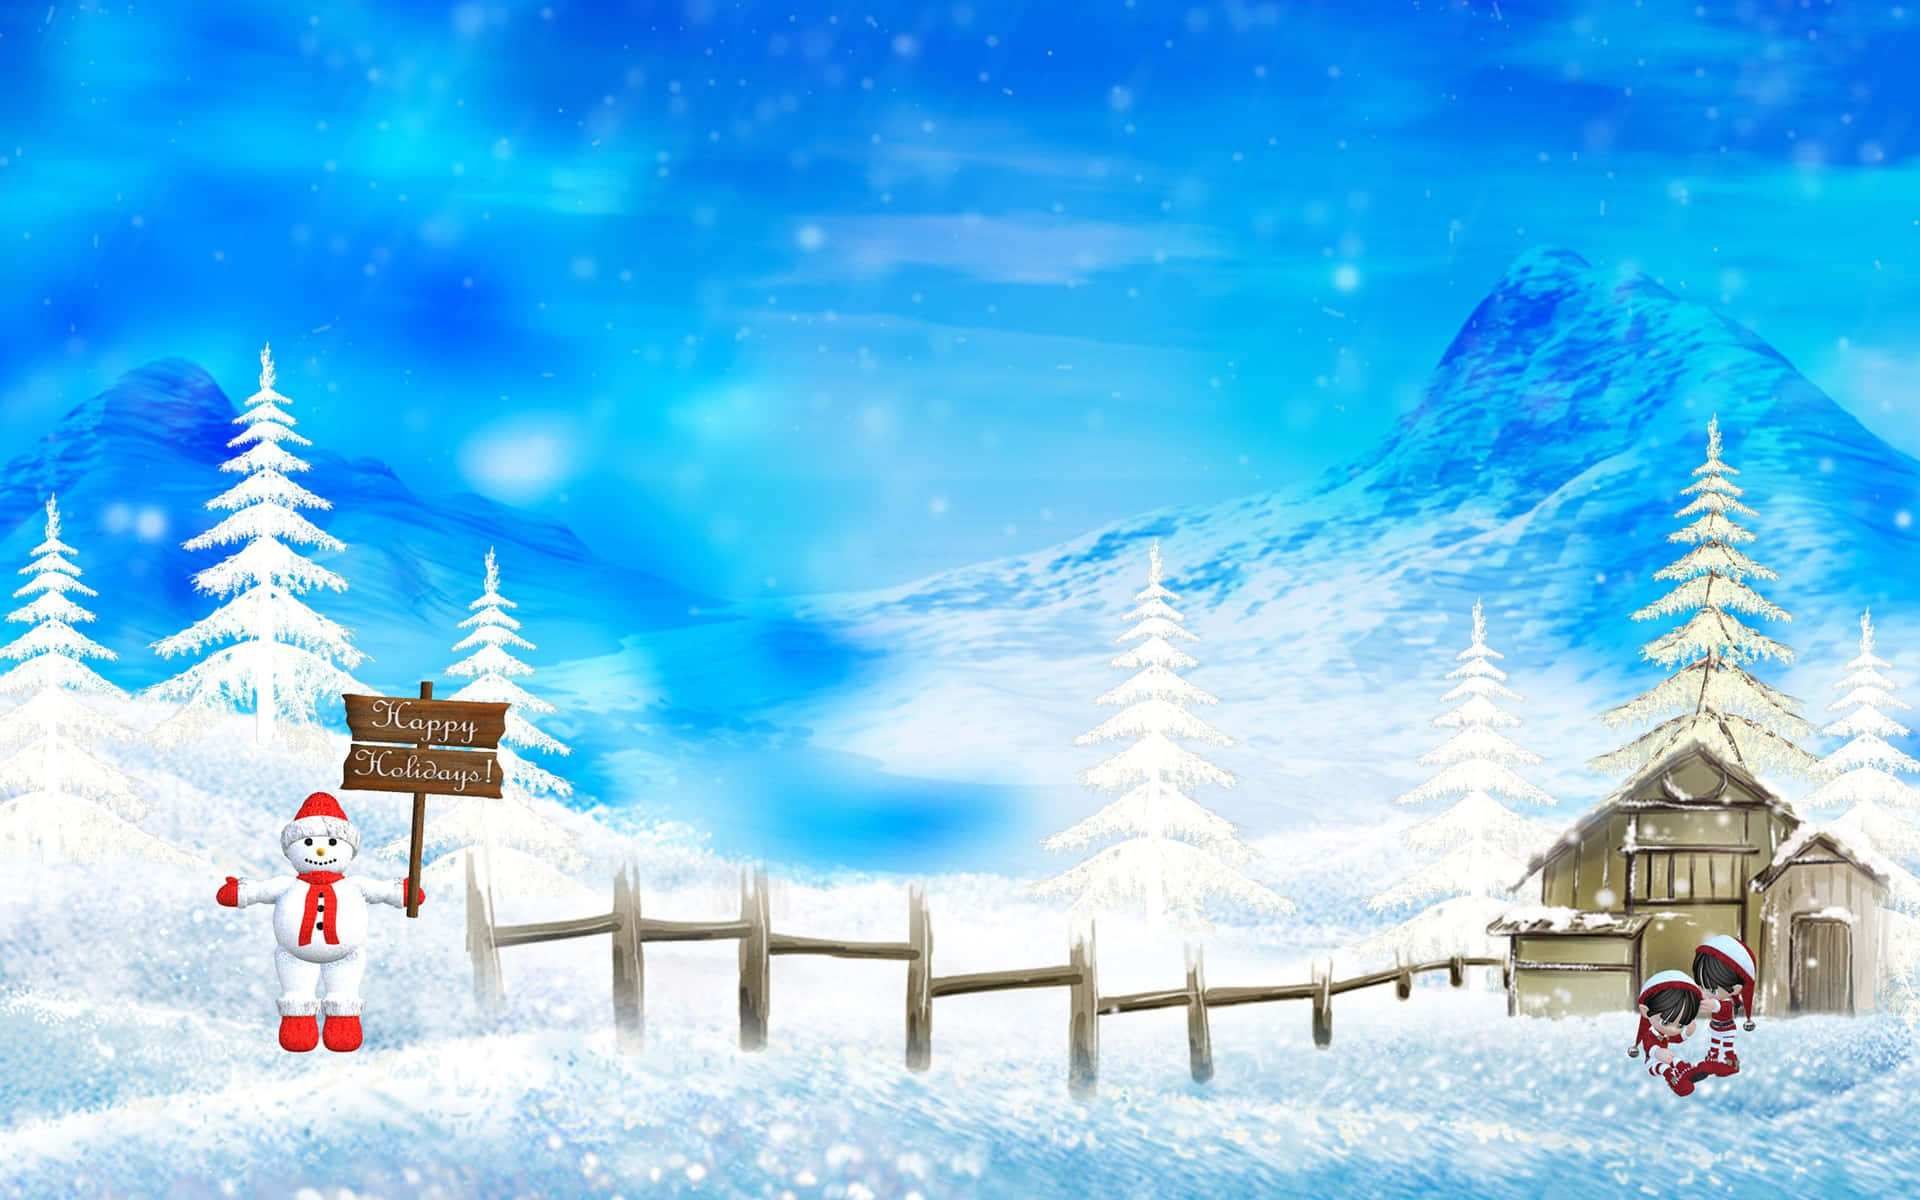 Magical Winter Wonderland Wallpaper